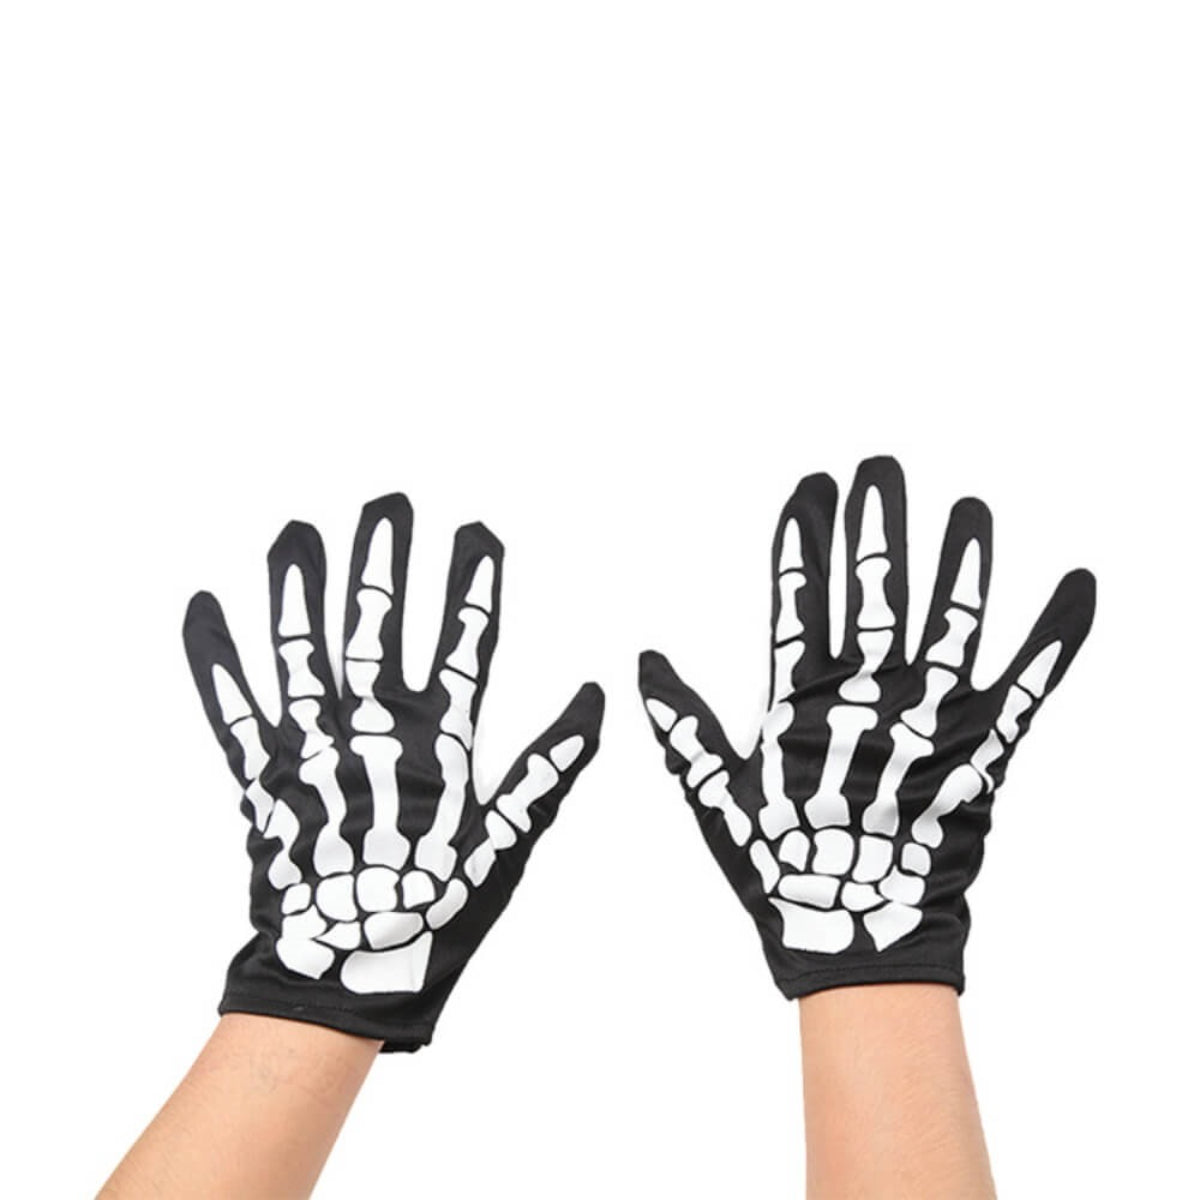 Ro Rox Skeleton Short Gloves Full Finger Black and White Halloween Costume